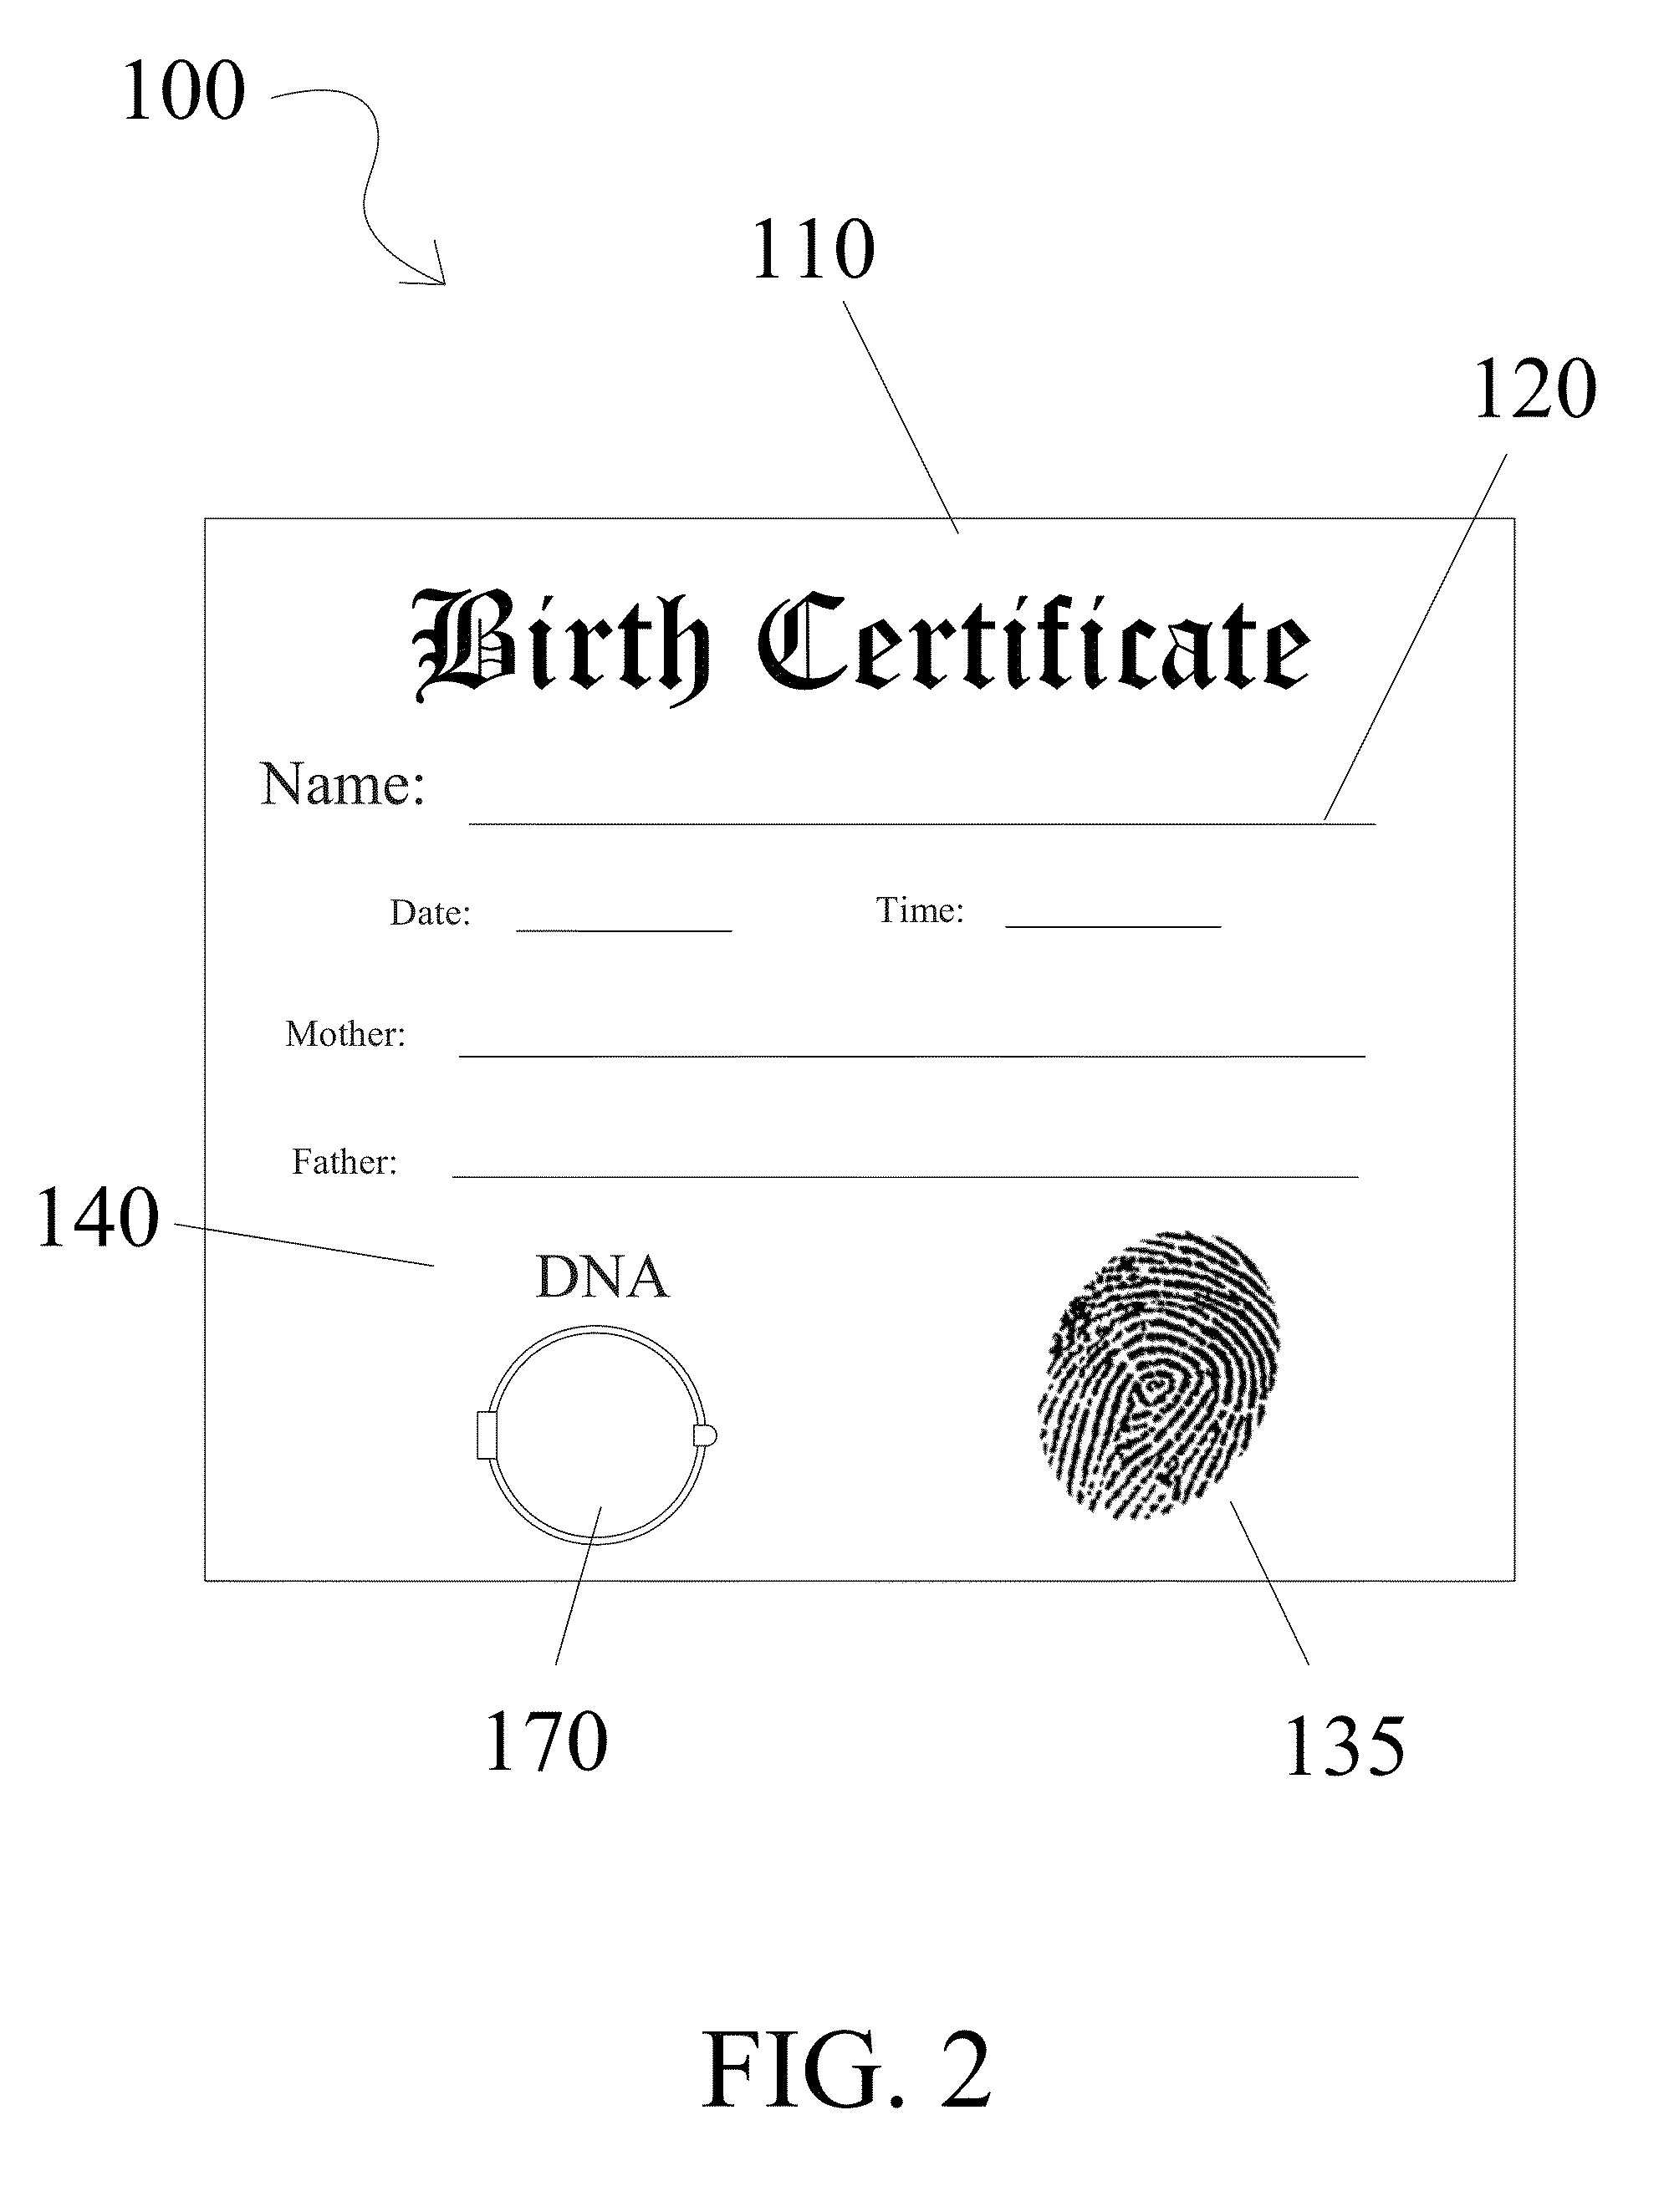 Biometric birth certificate